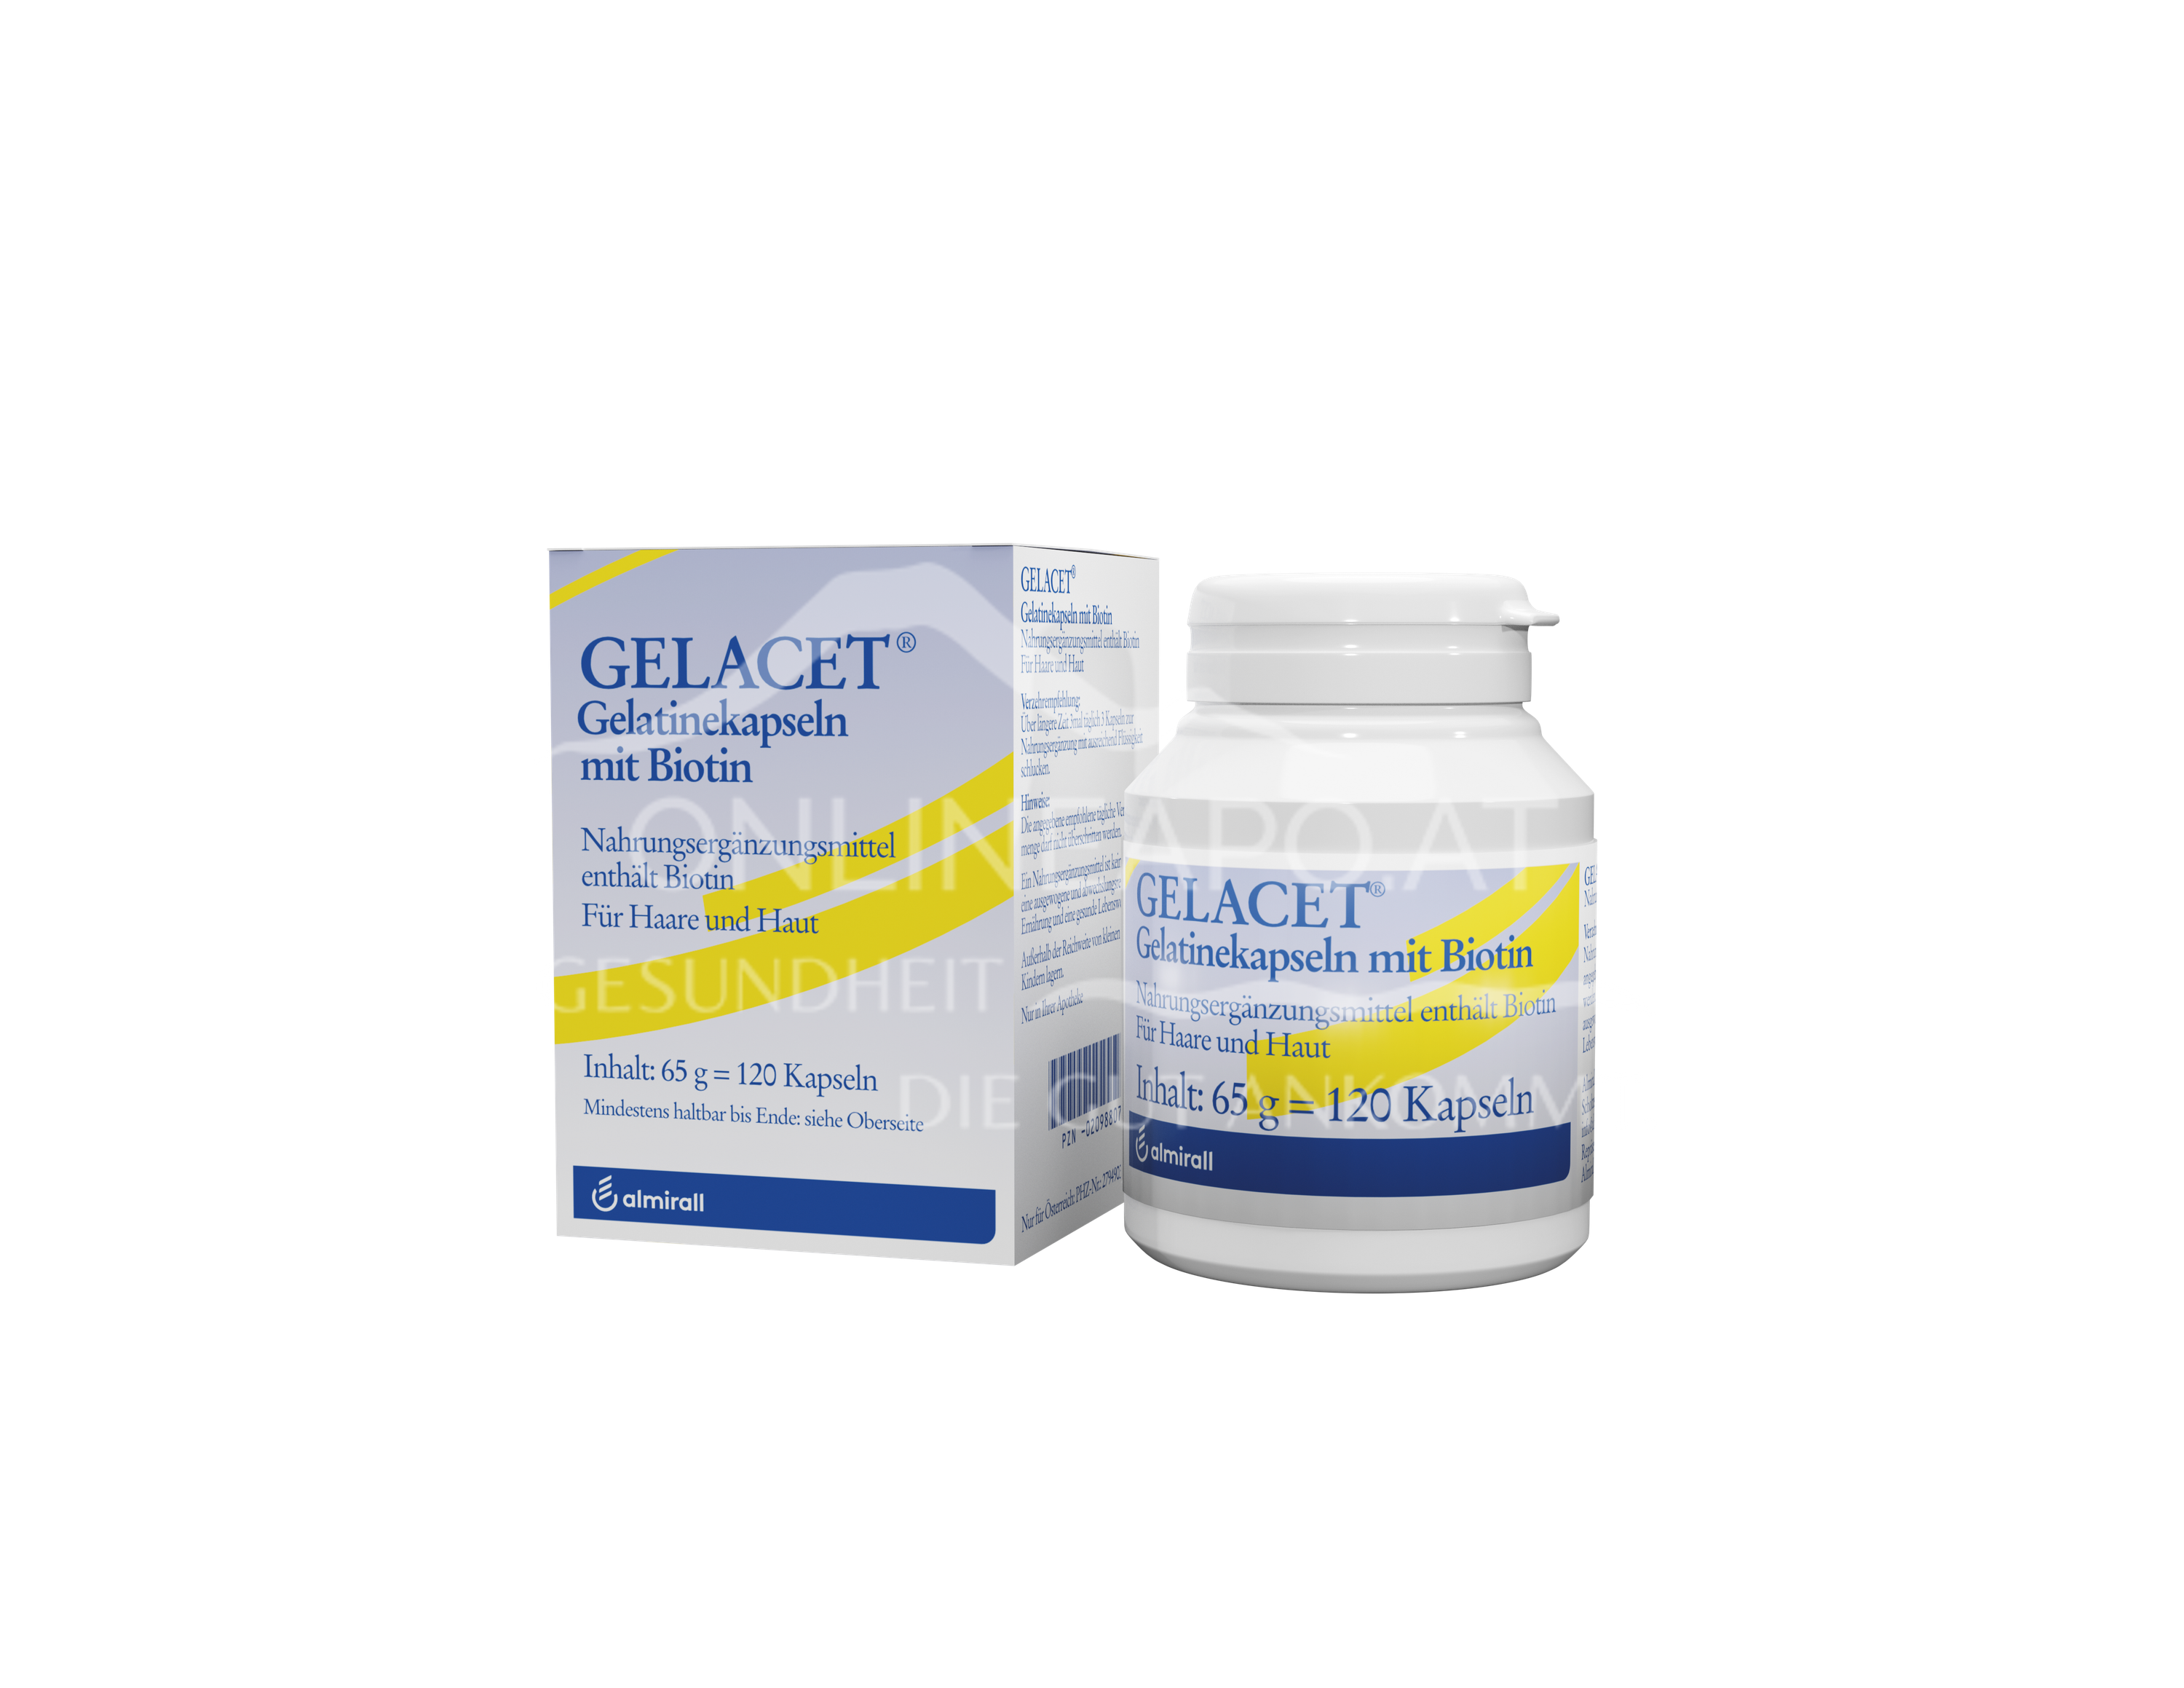 GELACET® Gelatinekapseln mit Biotin